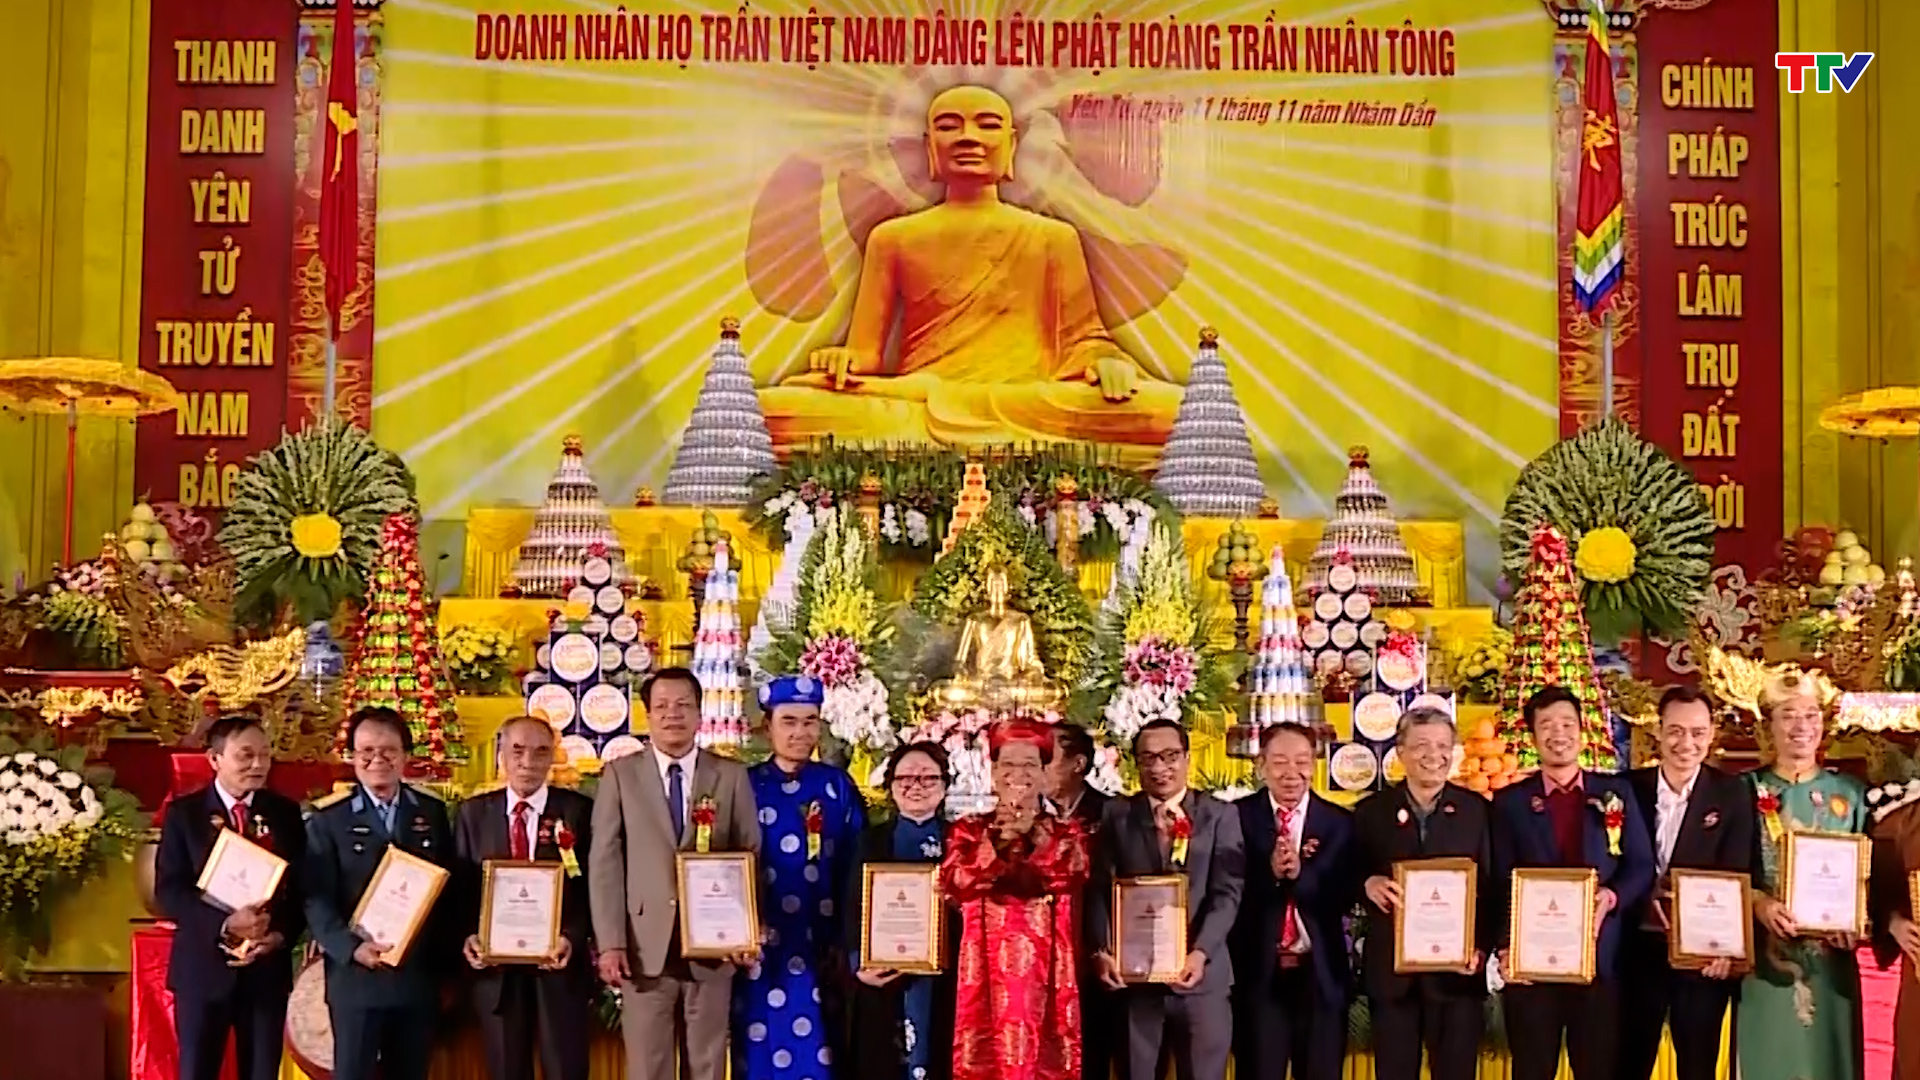 Hội đồng họ Trần Việt Nam tổ chức nhiều hoạt động nhân 764 năm ngày Phật hoàng Trần Nhân Tông đản sinh - Ảnh 5.